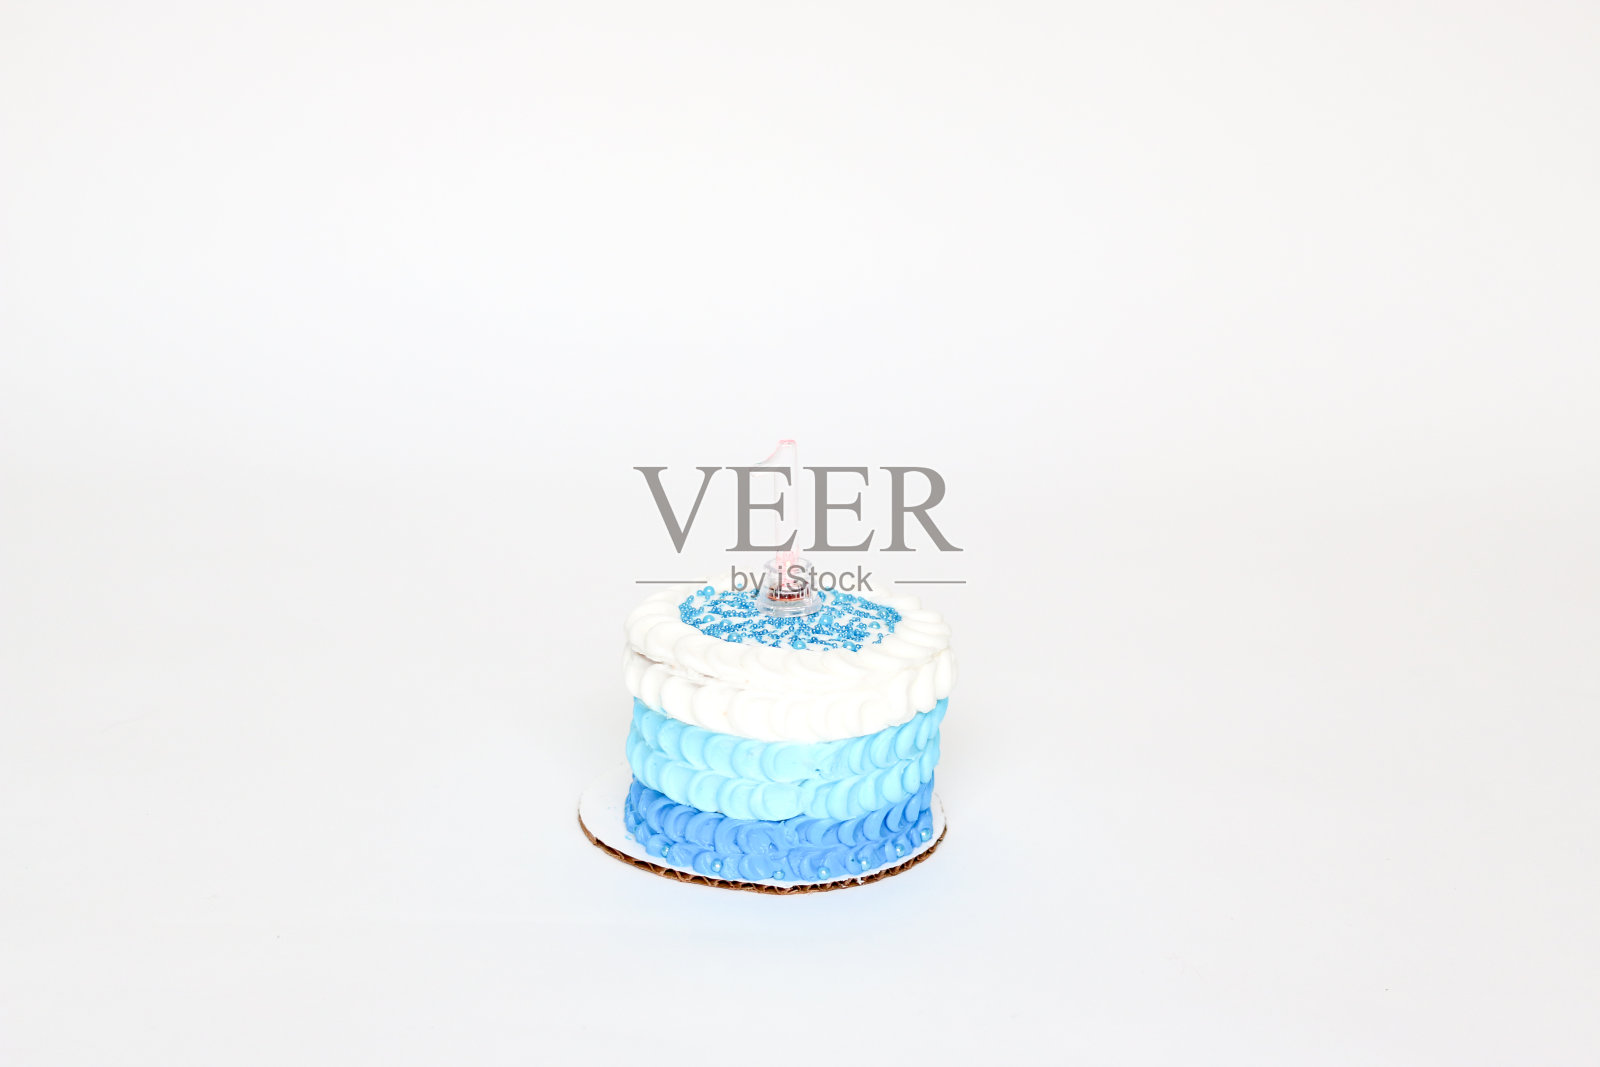 蓝色和白色的生日蛋糕照片摄影图片